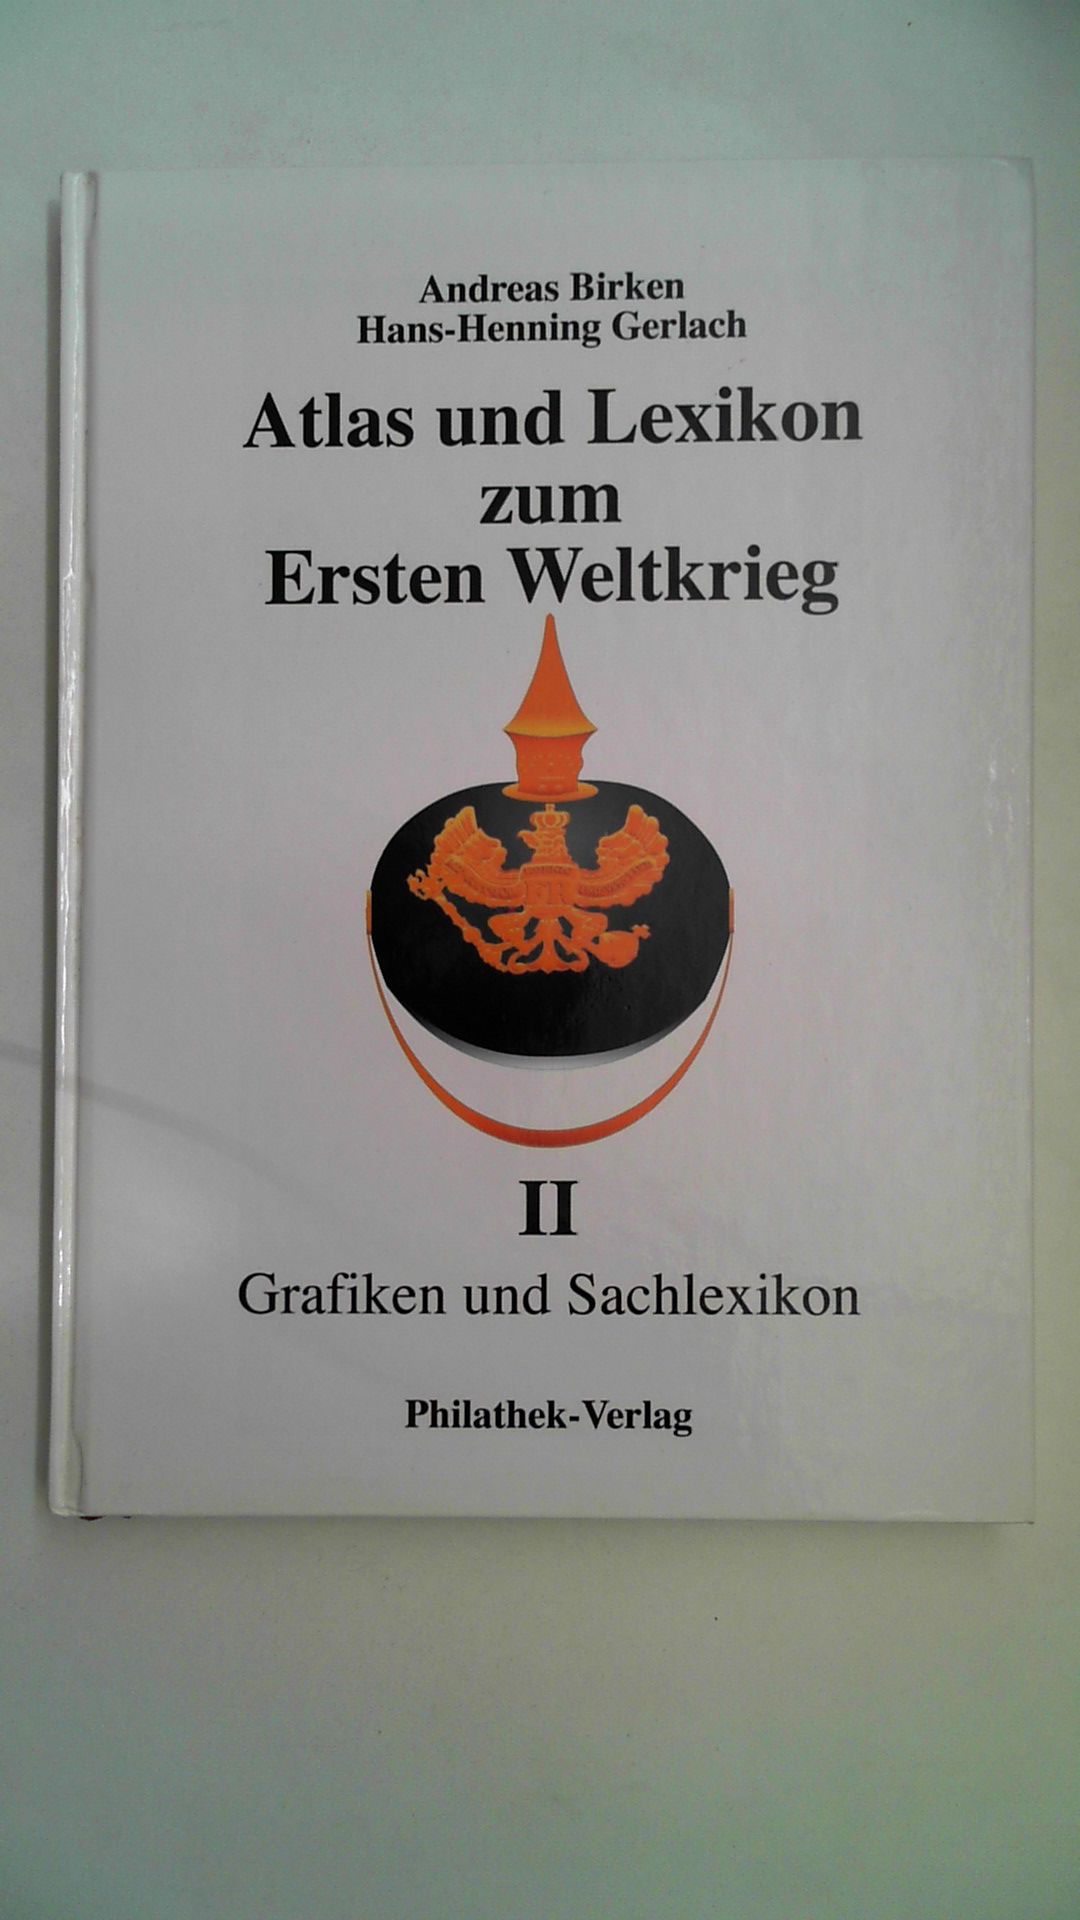 Atlas und Lexikon zum Ersten Weltkrieg Band 2 - Grafiken und Sachlexikon, - Birken, Andreas und Hans-Henning Gerlach